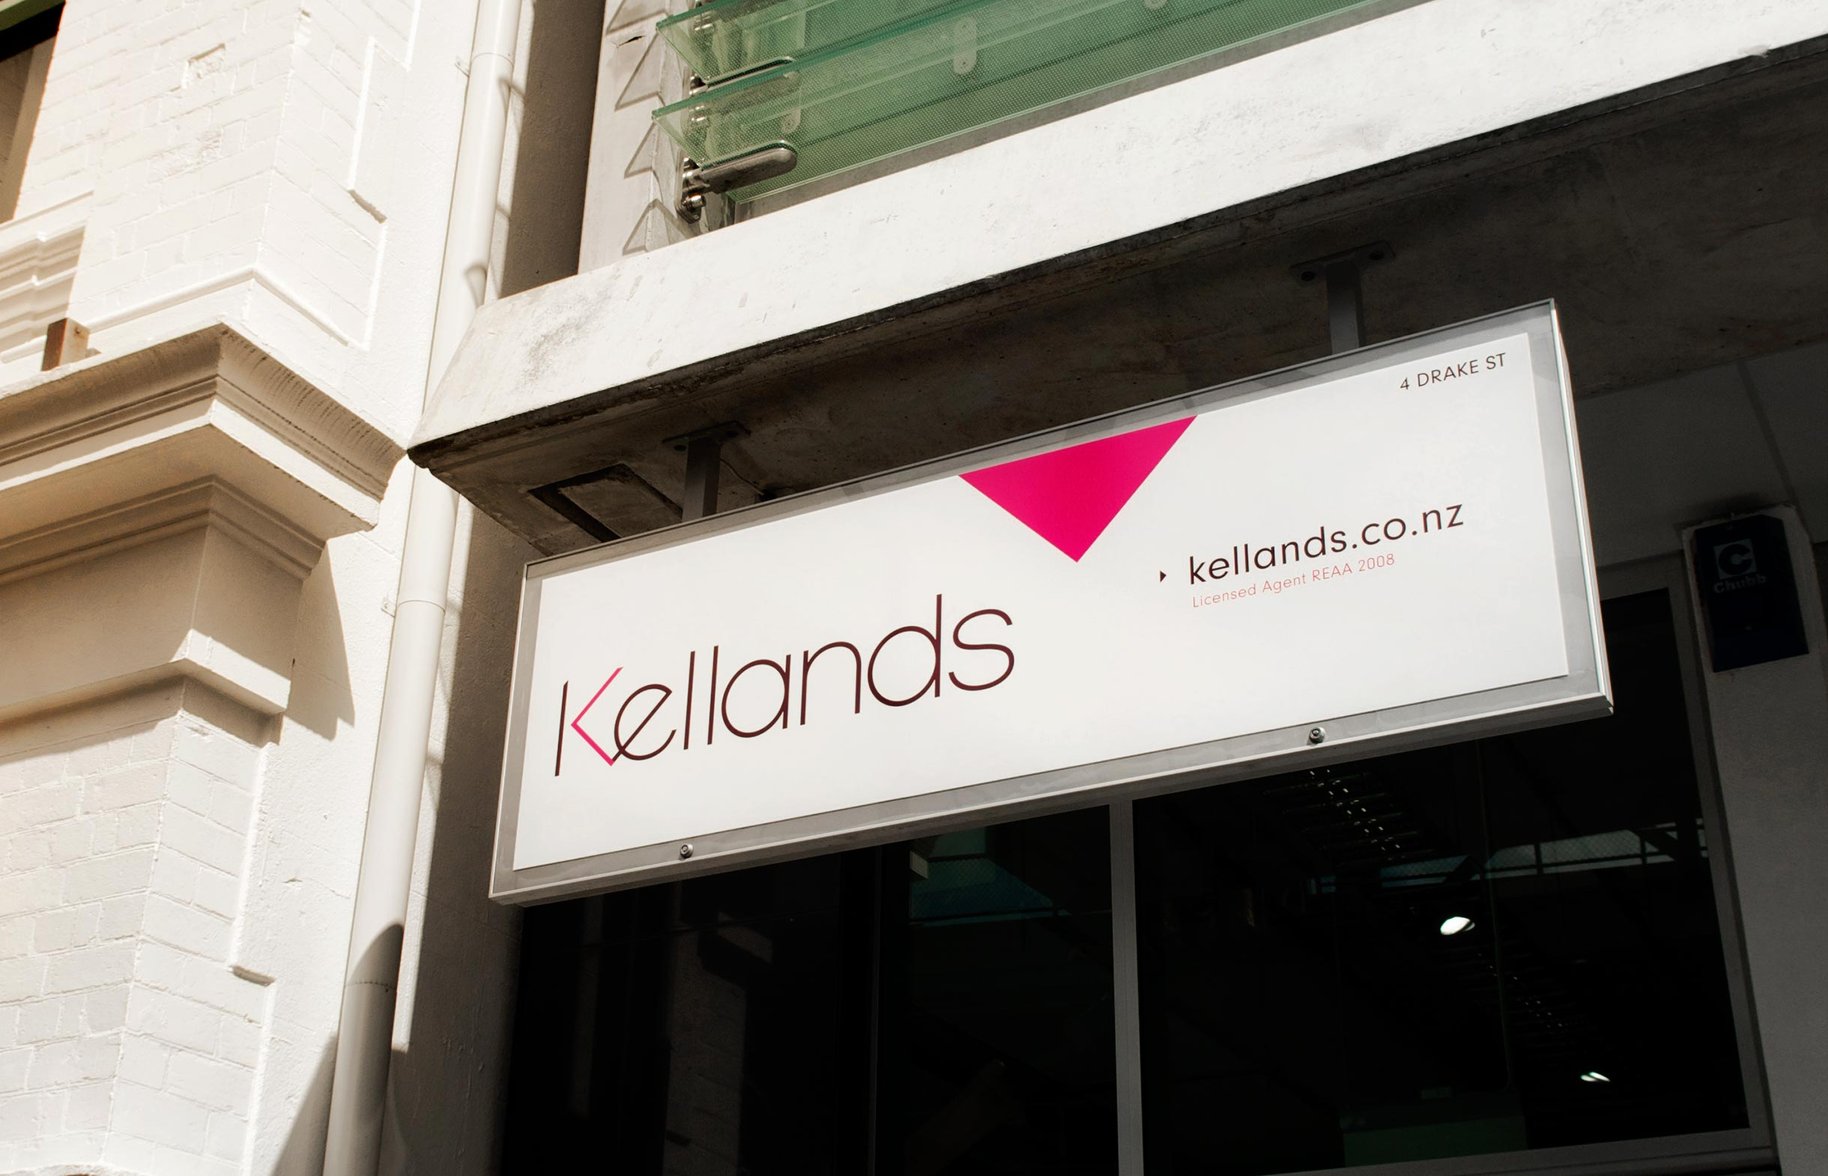 Kellands Real Estate signage